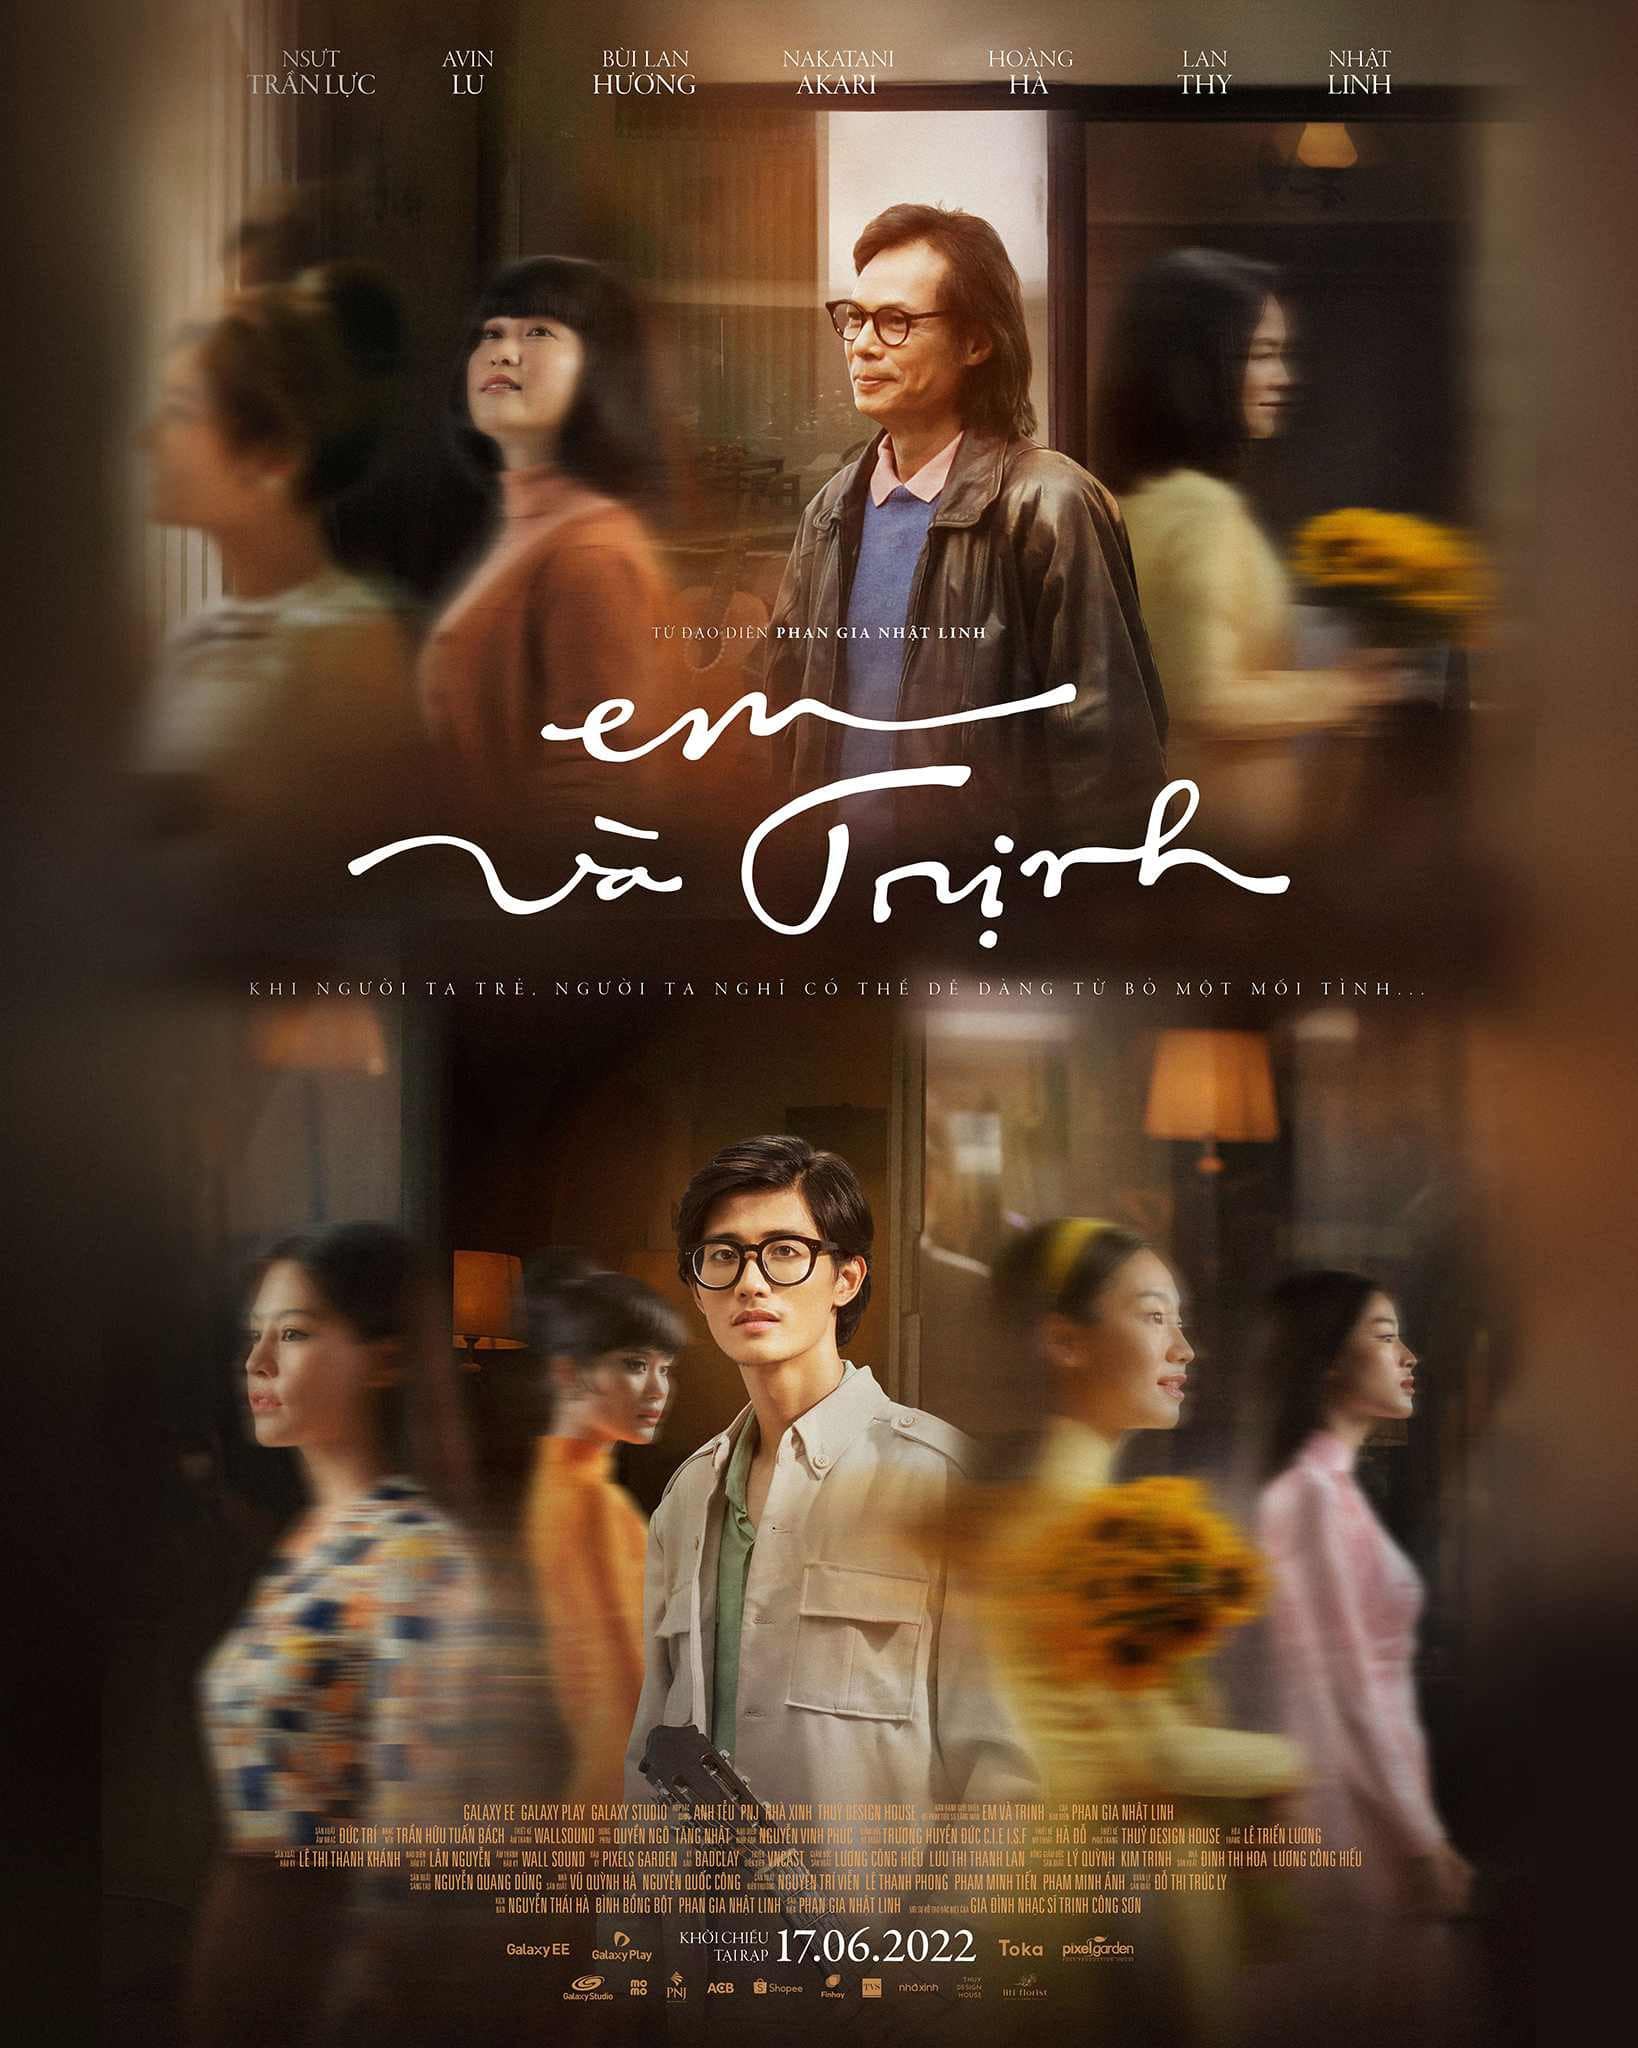 "Phim Em và Trịnh Review": Hành Trình Tái Hiện Huyền Thoại Âm Nhạc Trịnh Công Sơn